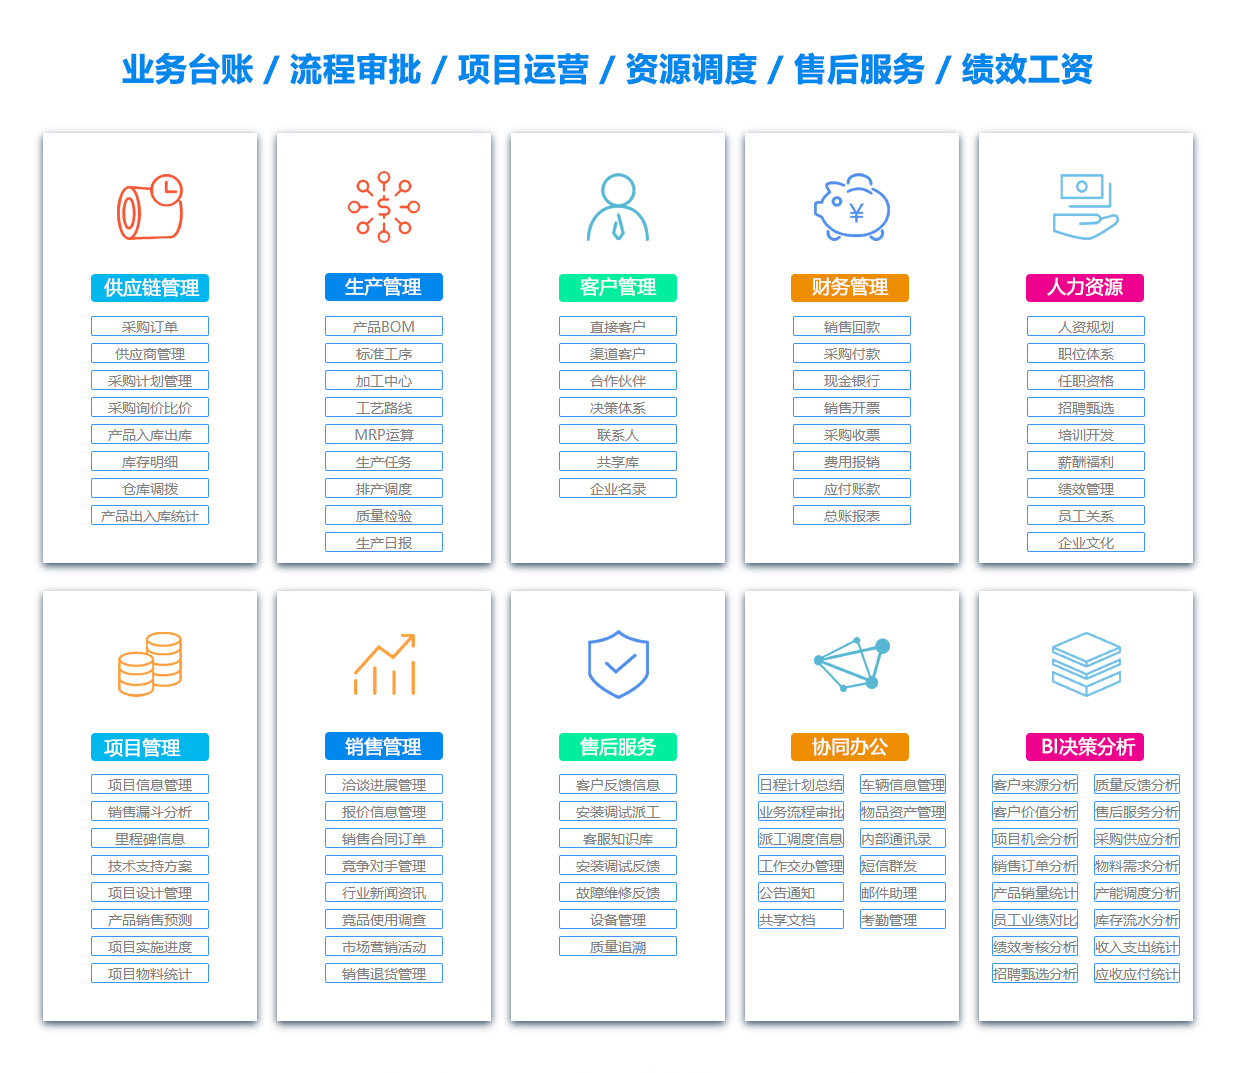 三明EAI:企业应用集成系统